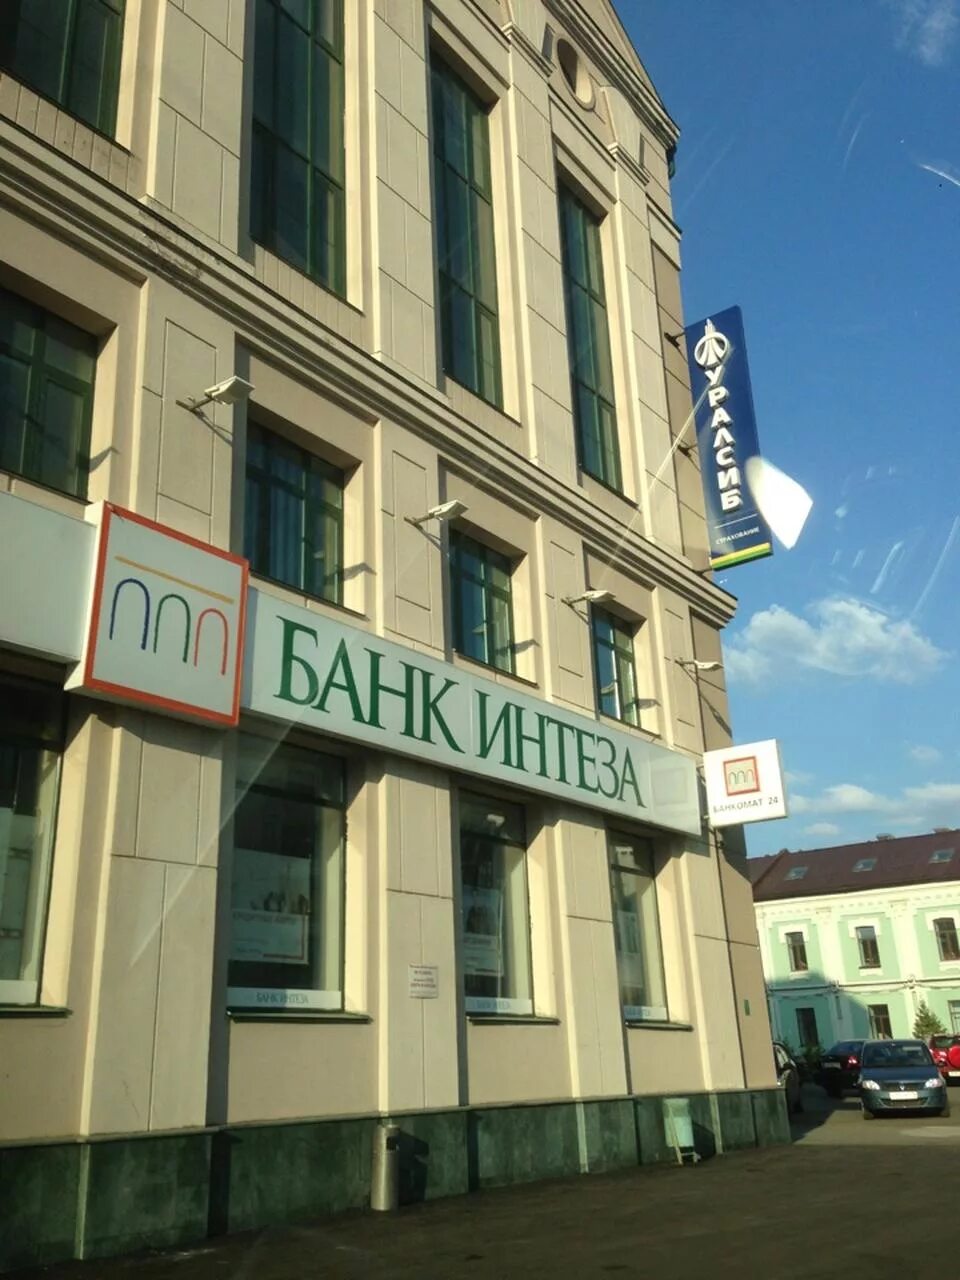 Островского 87 Казань. Банк Интеза. Banca-Intesa банк. Банк Интеза Кожуховская.